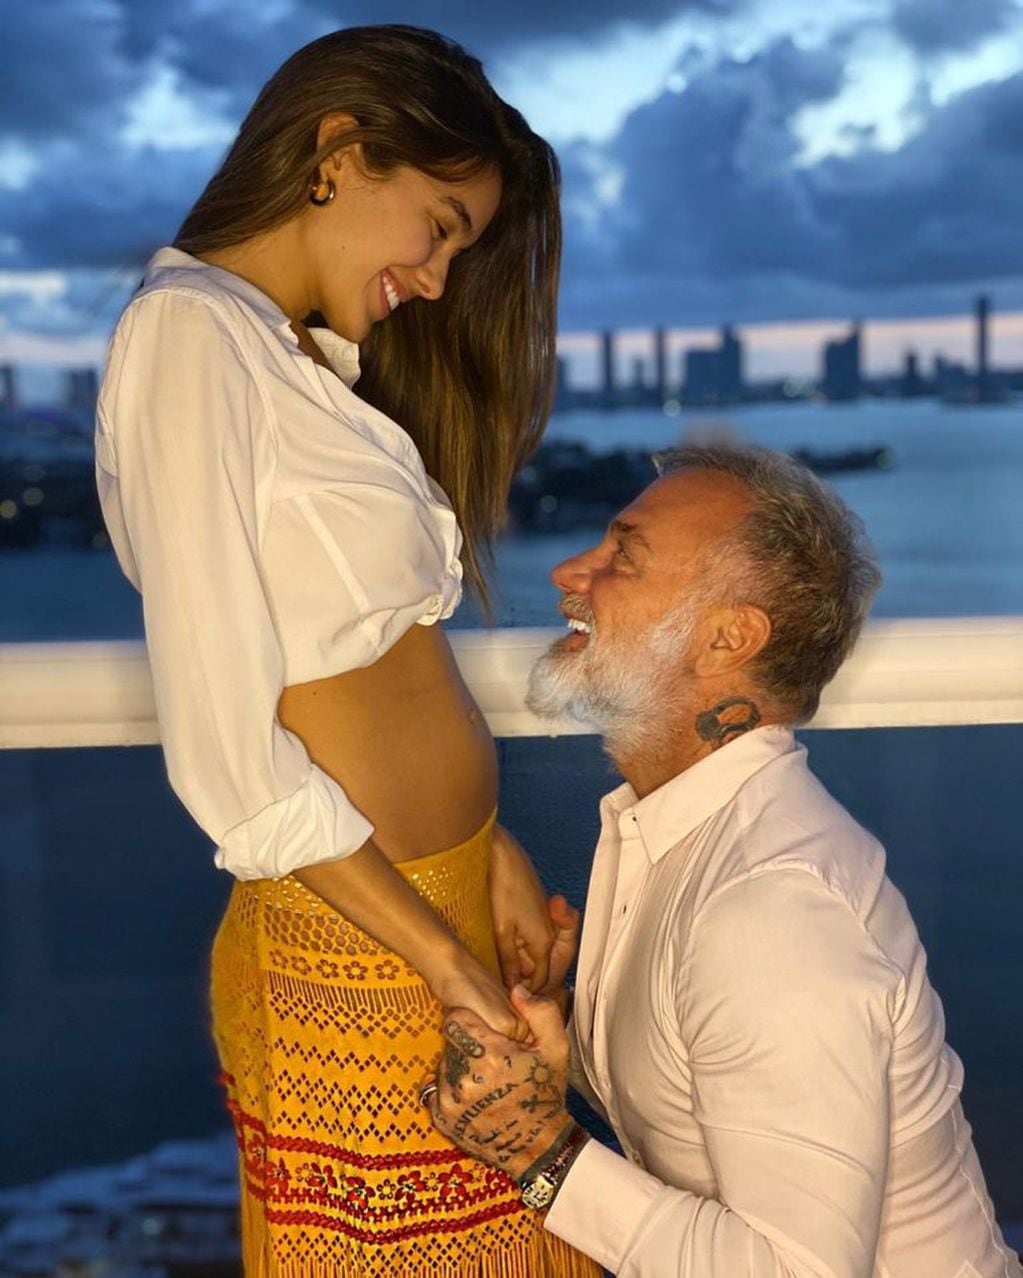 Gianluca Vacchi subió una foto mostrando la pancita de su novia. (Instagram)